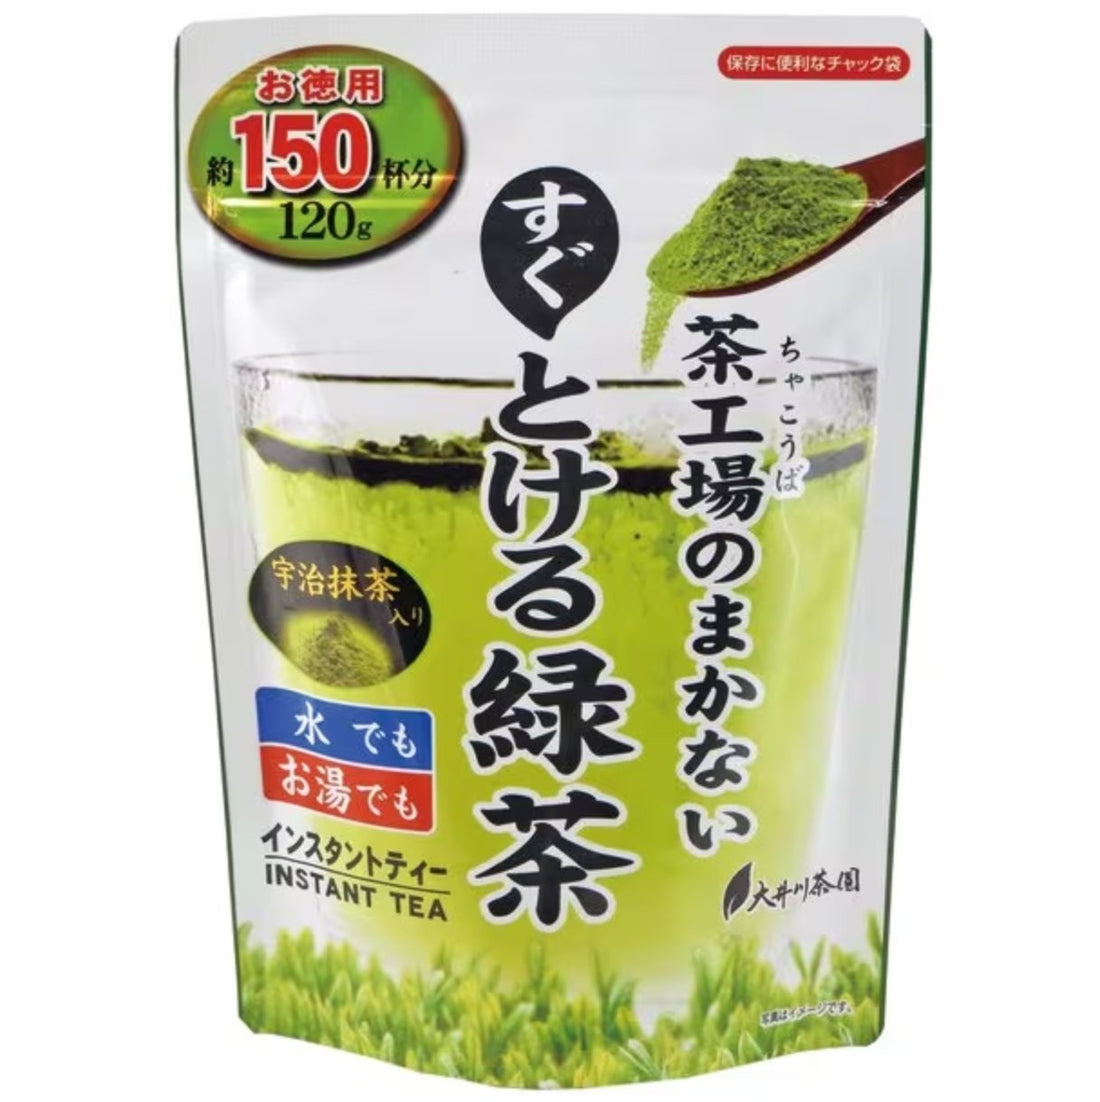 Oigawa Tea Garden Tea Factory&